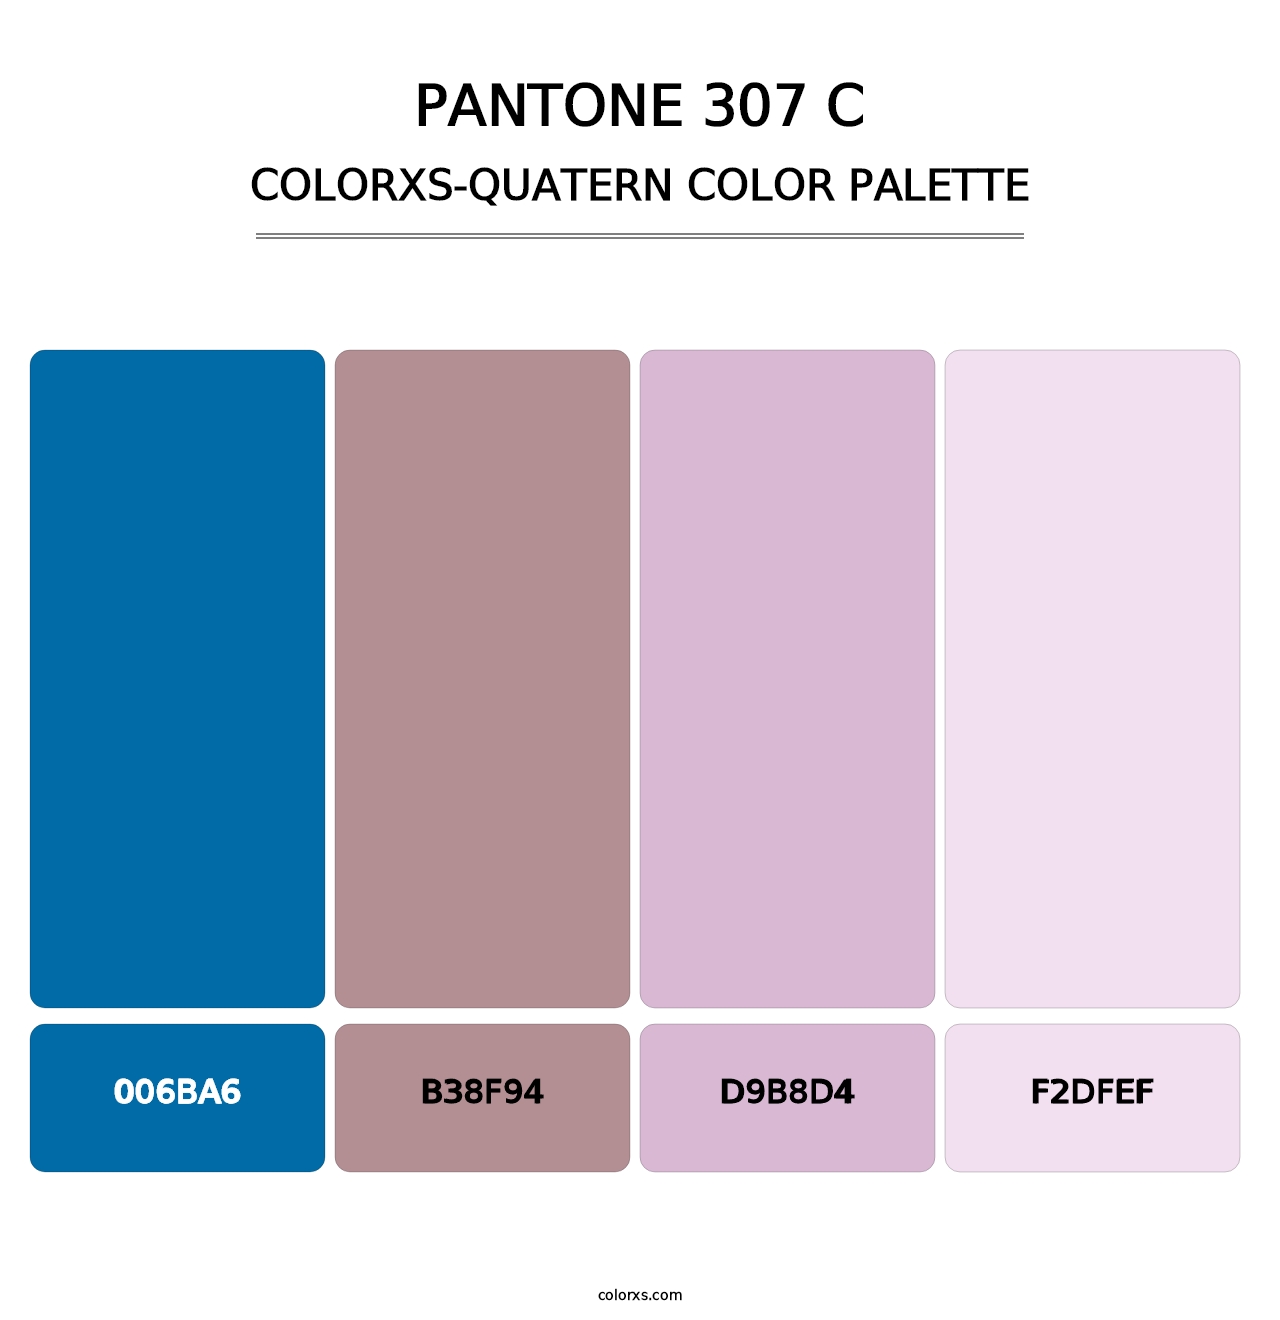 PANTONE 307 C - Colorxs Quatern Palette